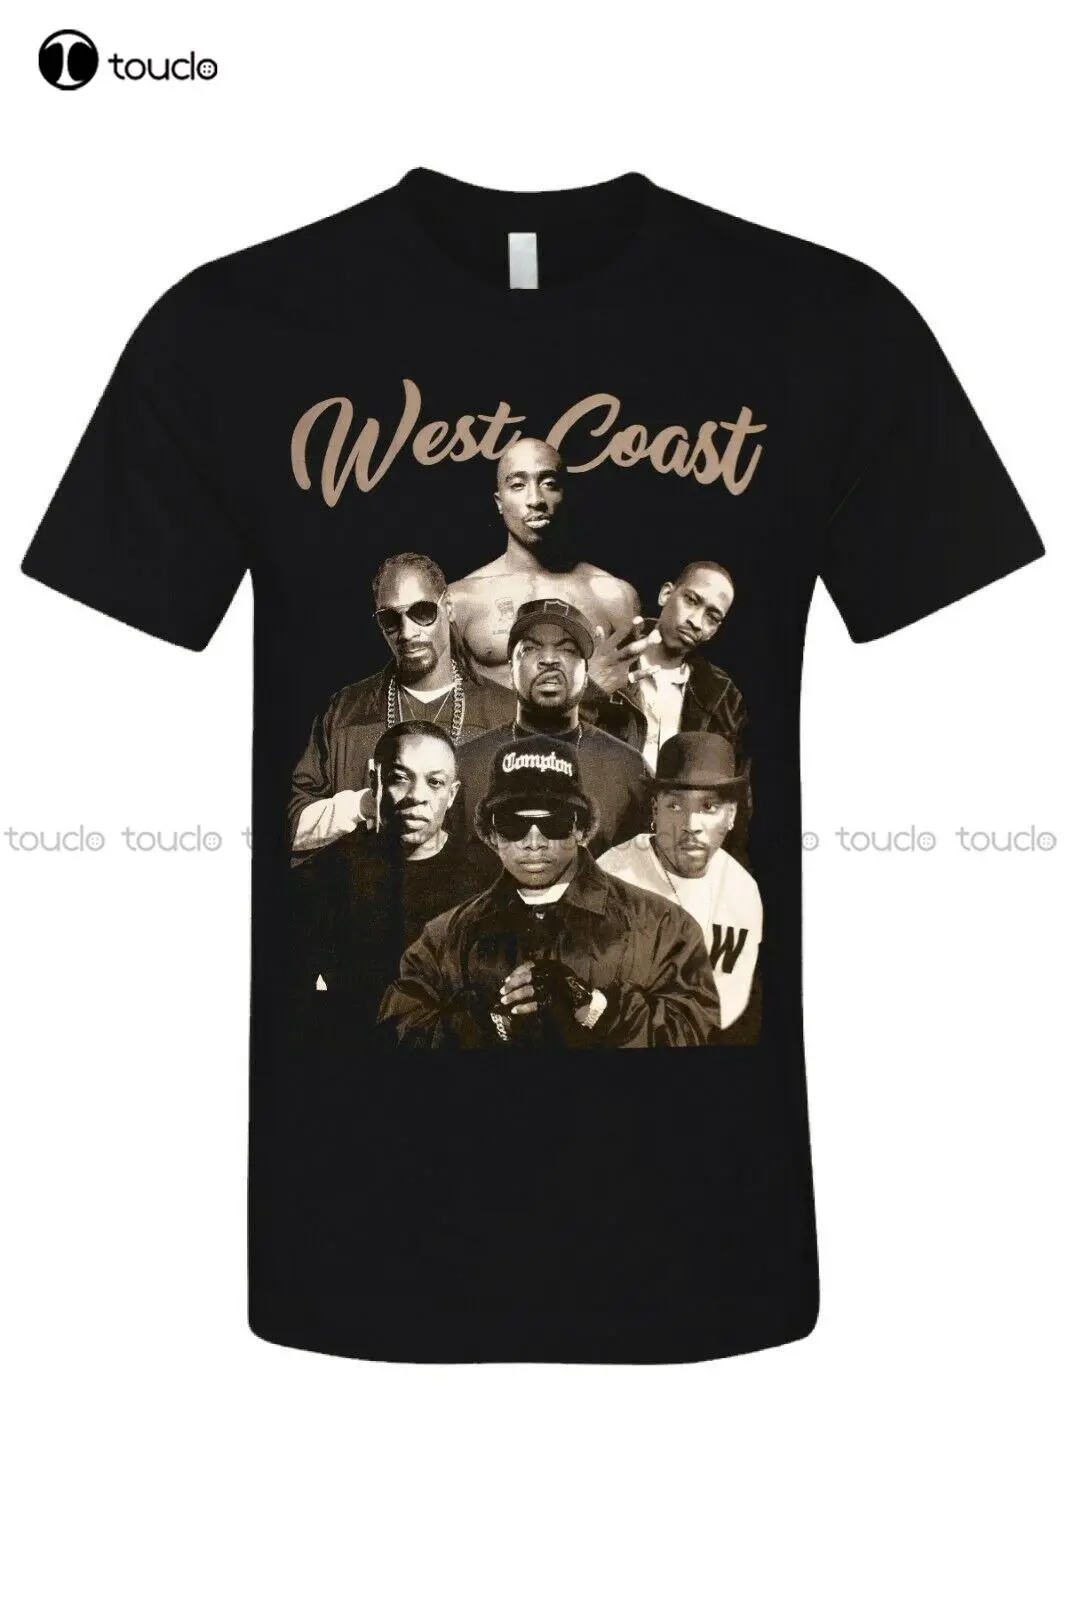 

Футболка West Coast легенды хип-хопа 2Pac & Compton Rappers, городская графическая футболка, новая Blk Унисекс Женская Мужская футболка